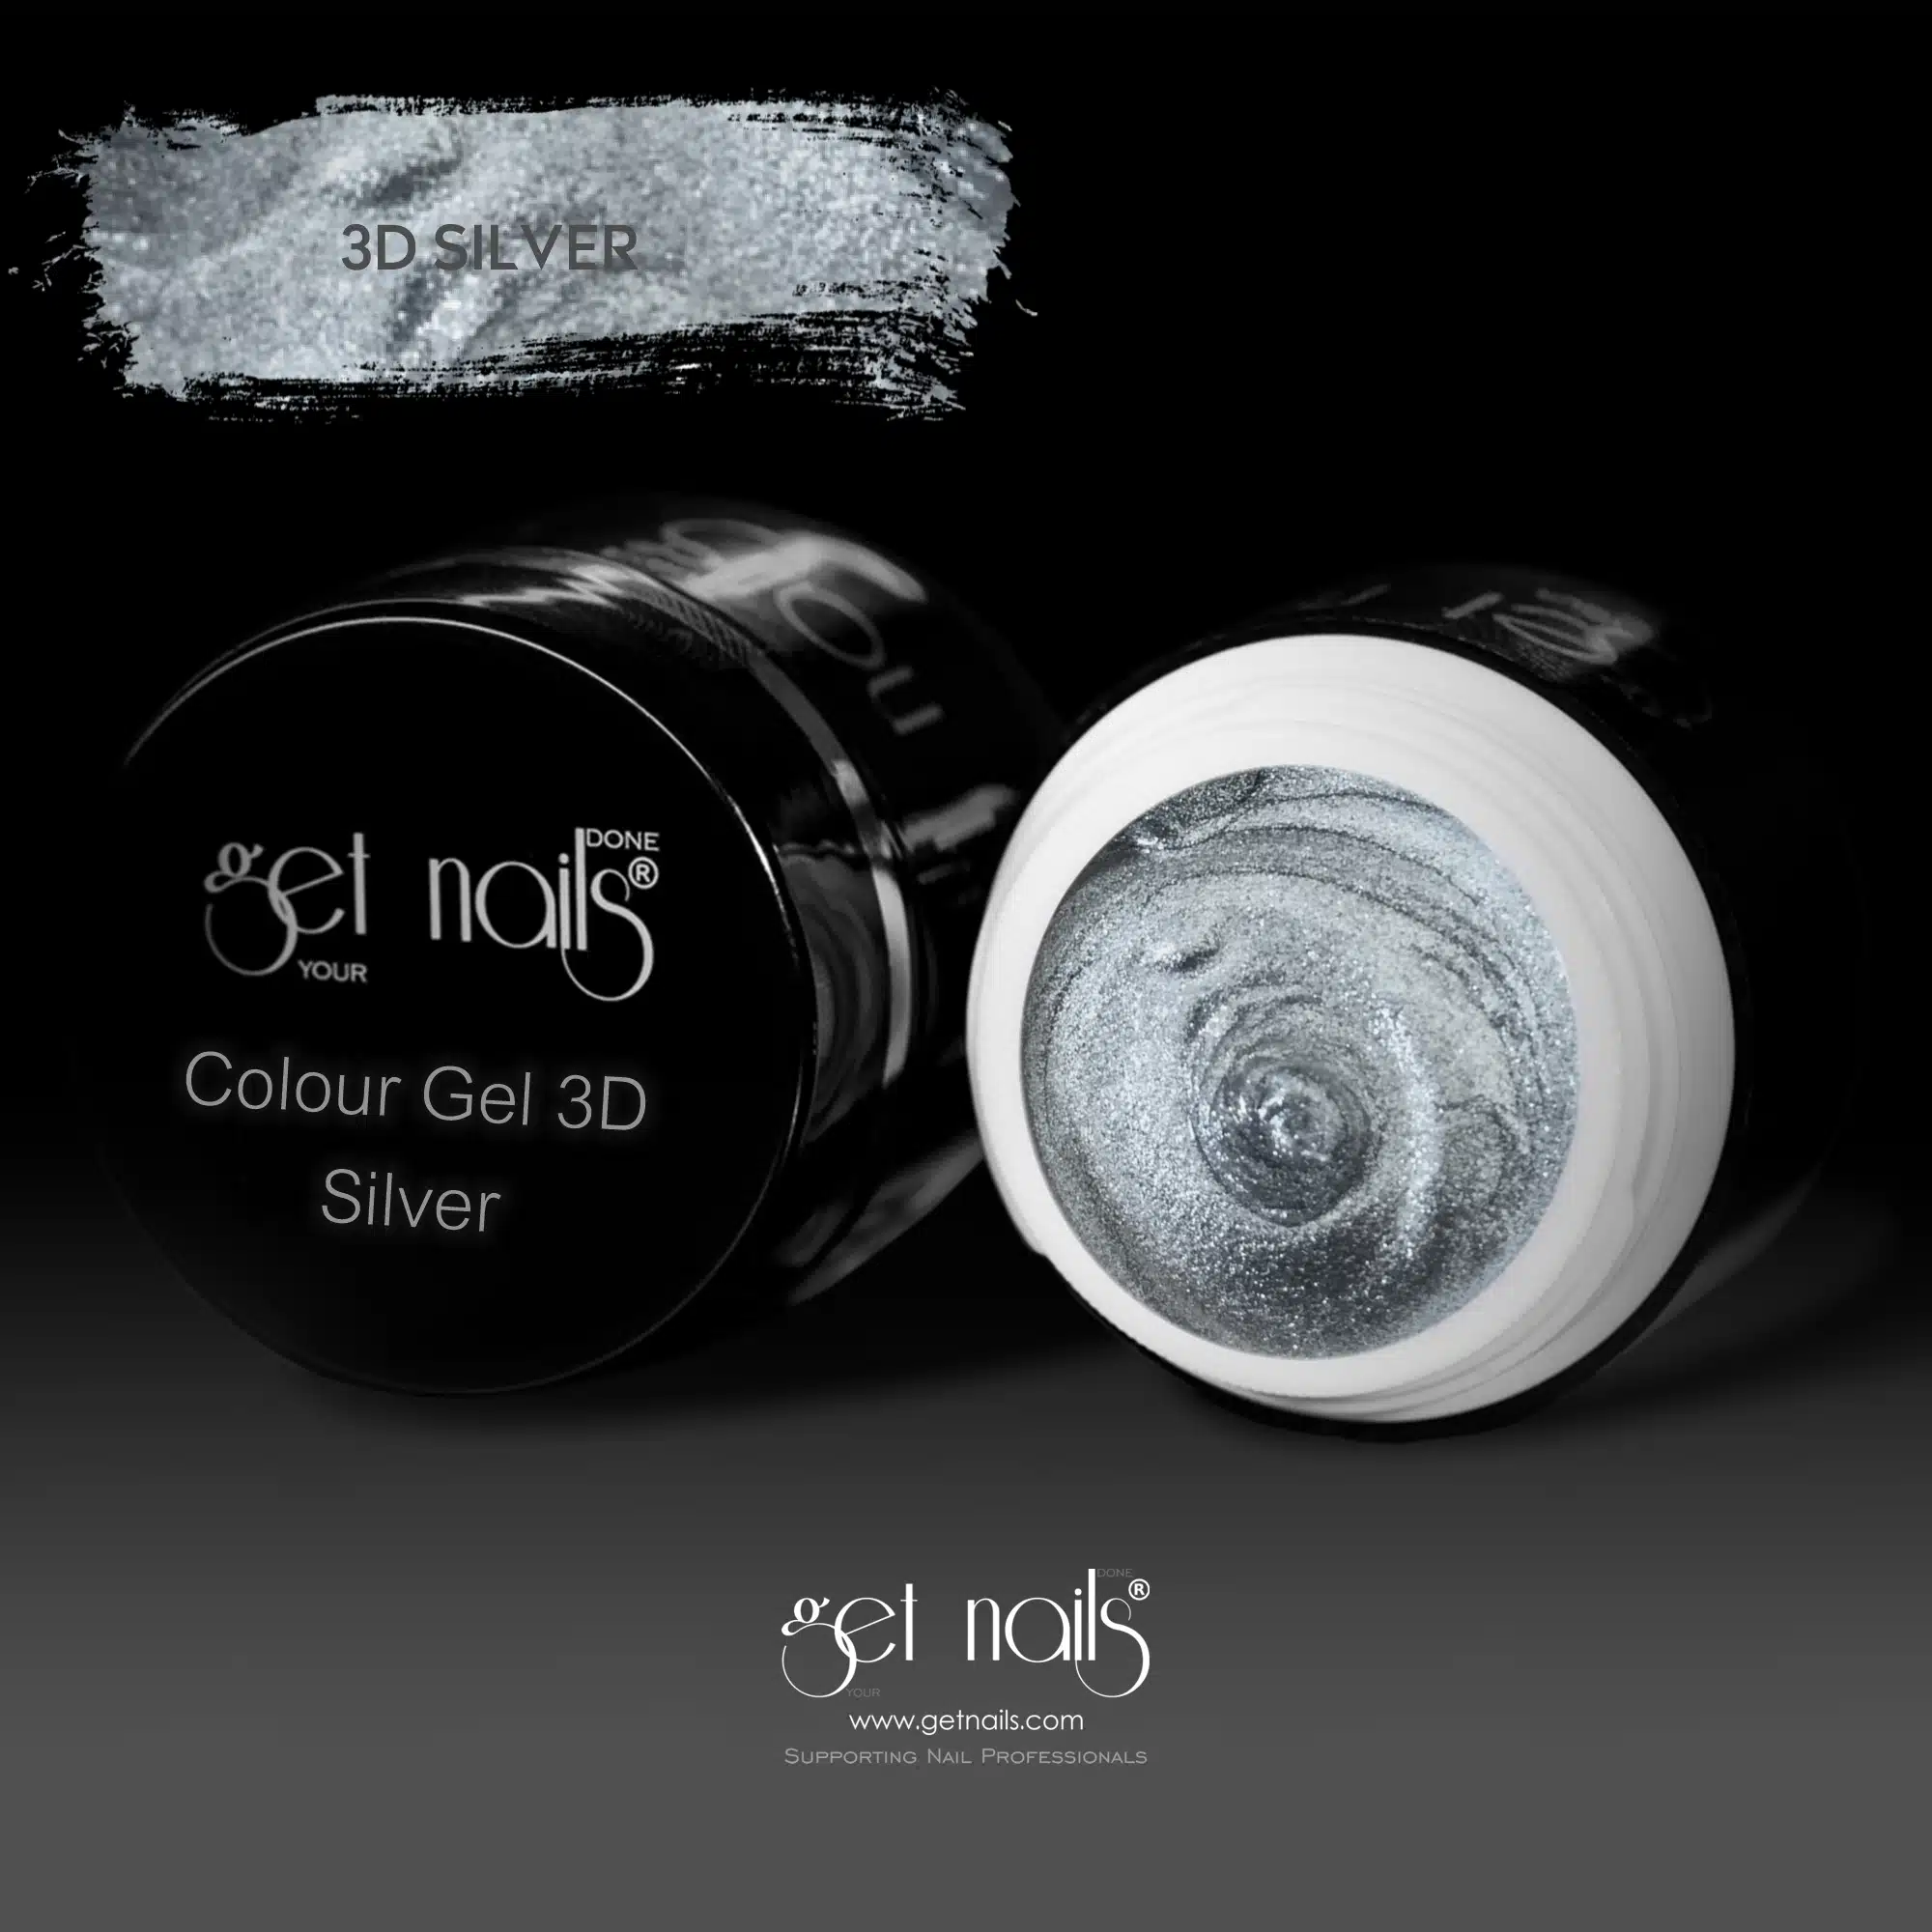 Get Nails Austria - Colour Gel 3D Silver 5g